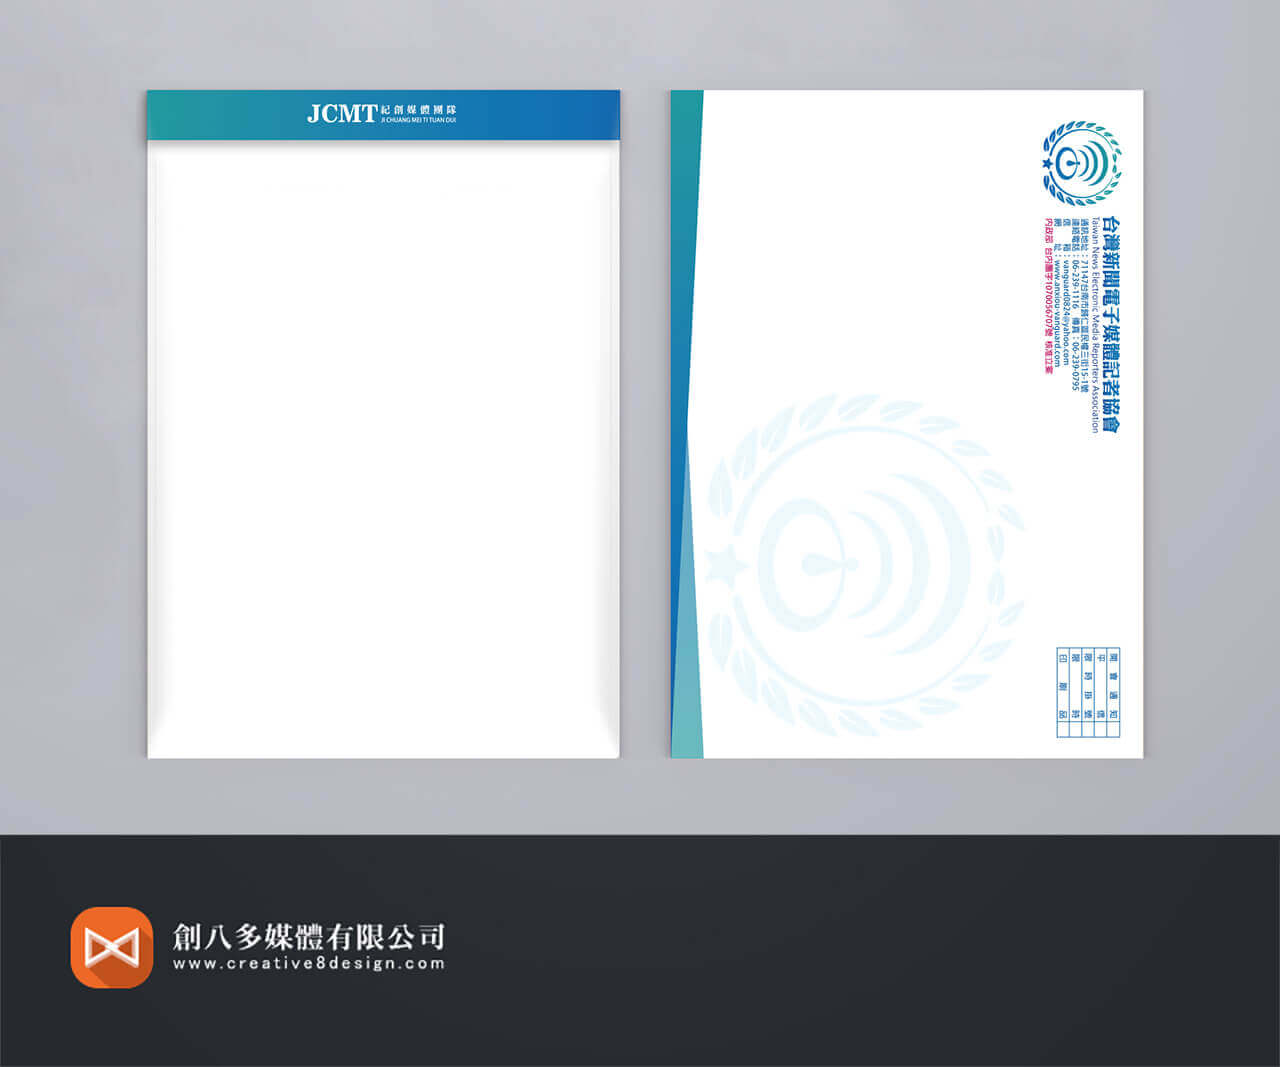 台灣新聞電子媒體記者協會-信封設計(2)的圖片